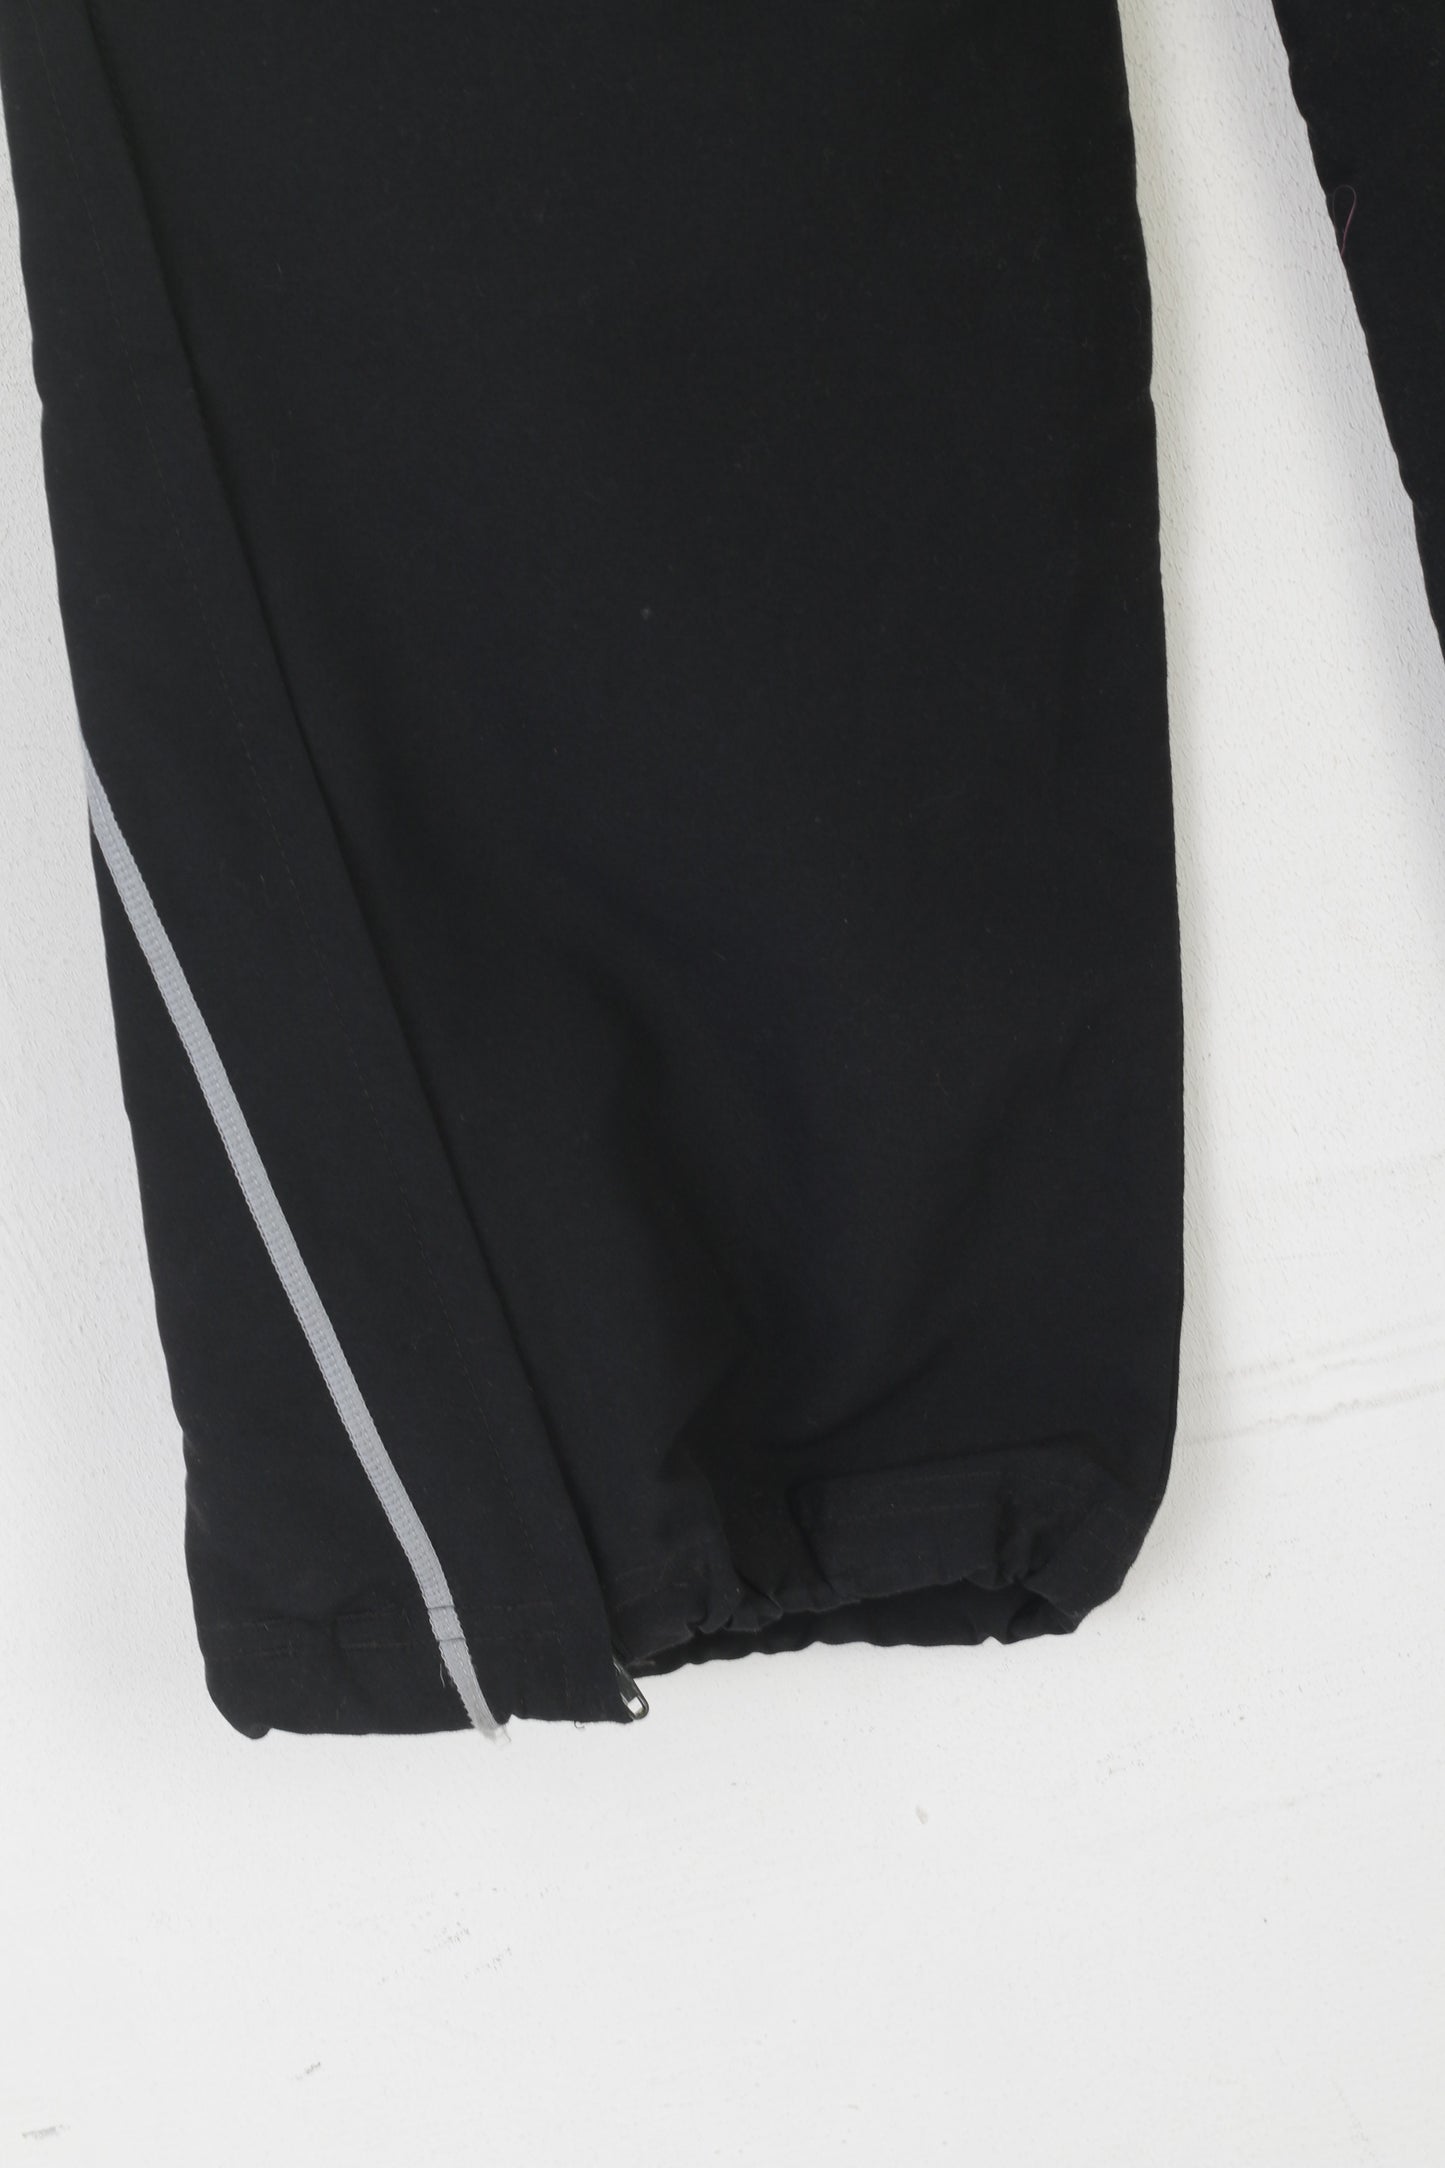 Adidas Garçons 152 12 Âge Pantalon Noir Polyester Climalite Active Pantalon de survêtement